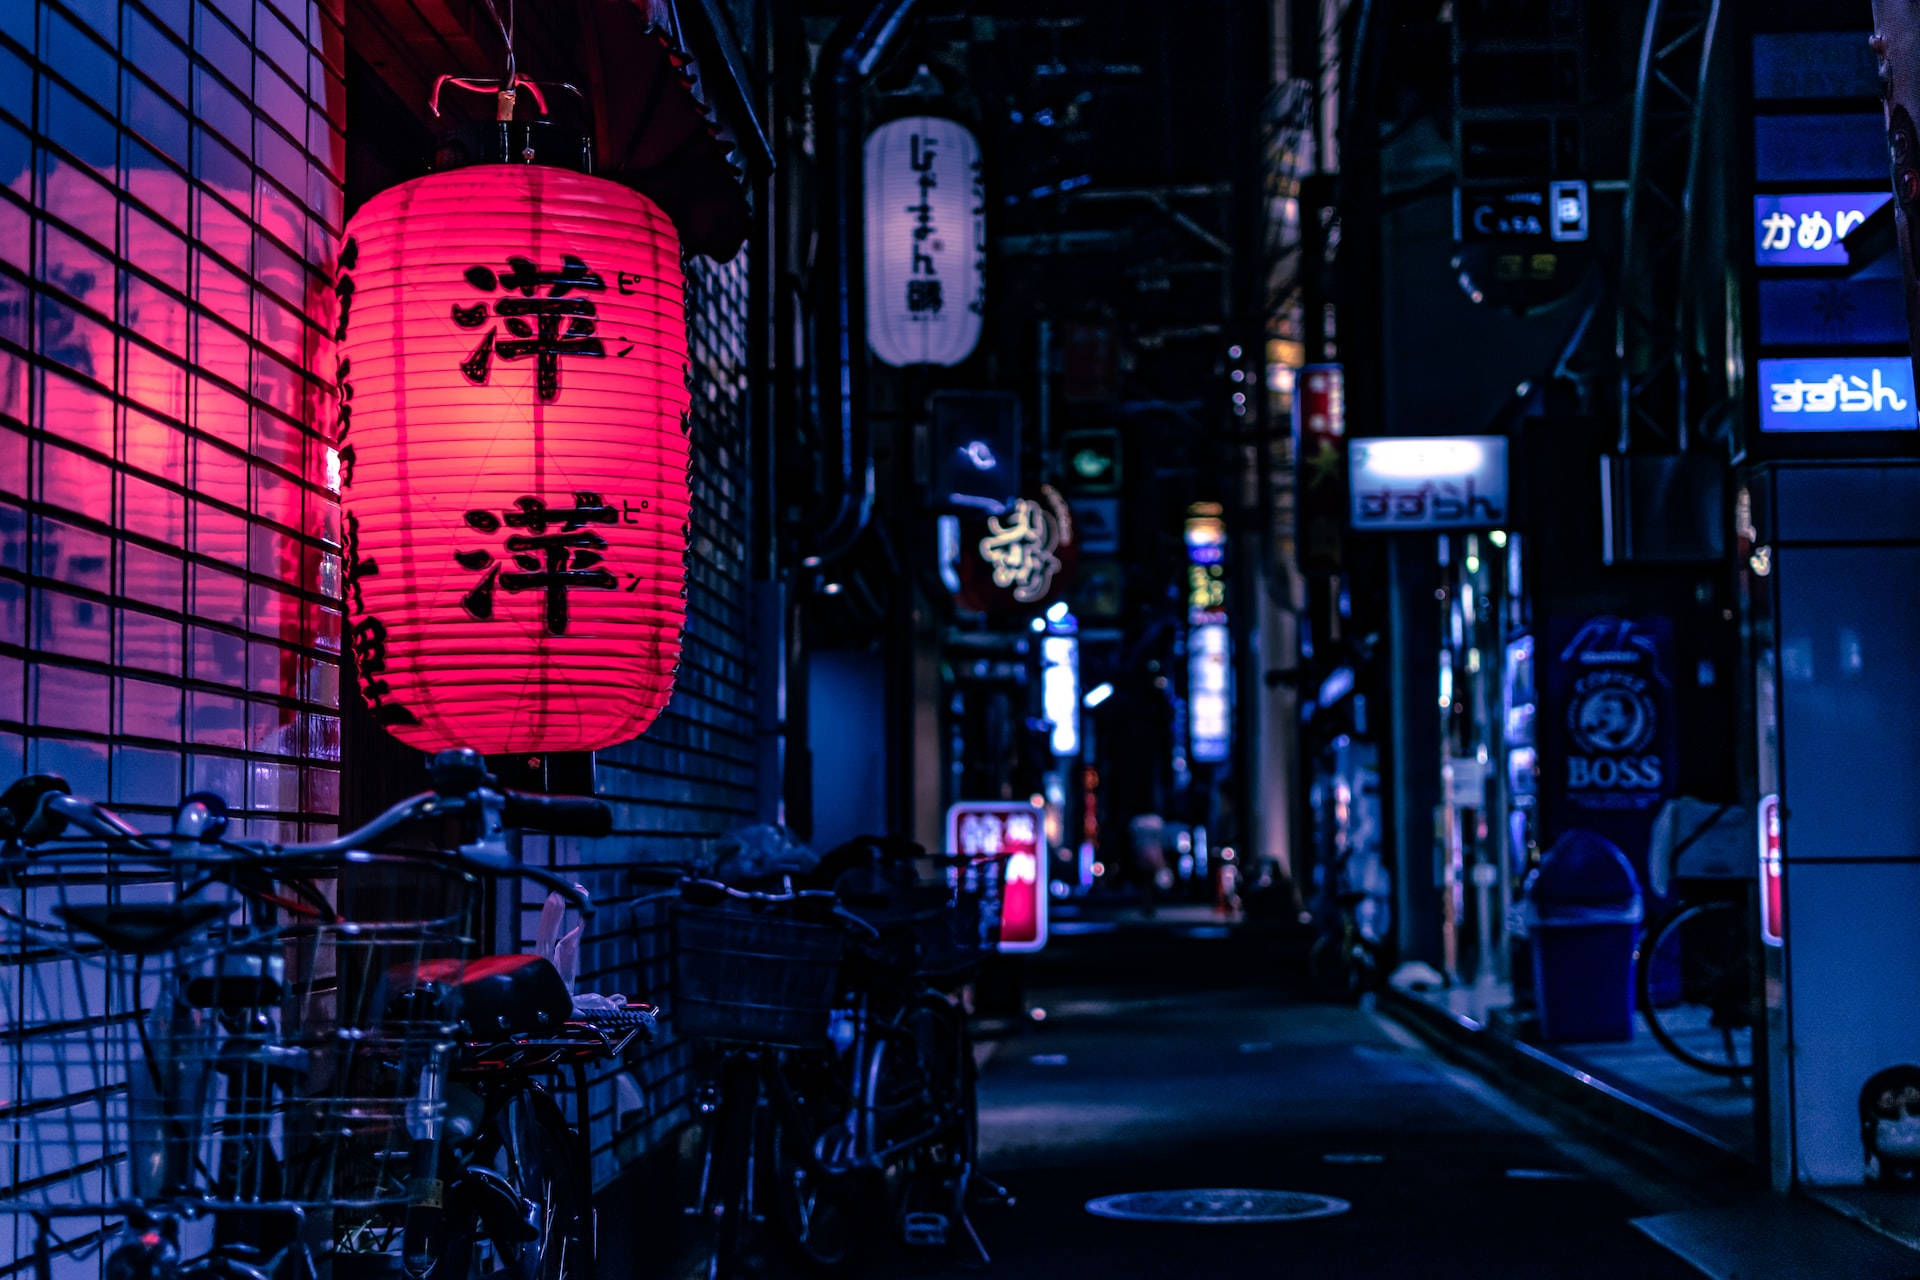 Download Night Aesthetic Japanese Red Lantern Wallpaper 